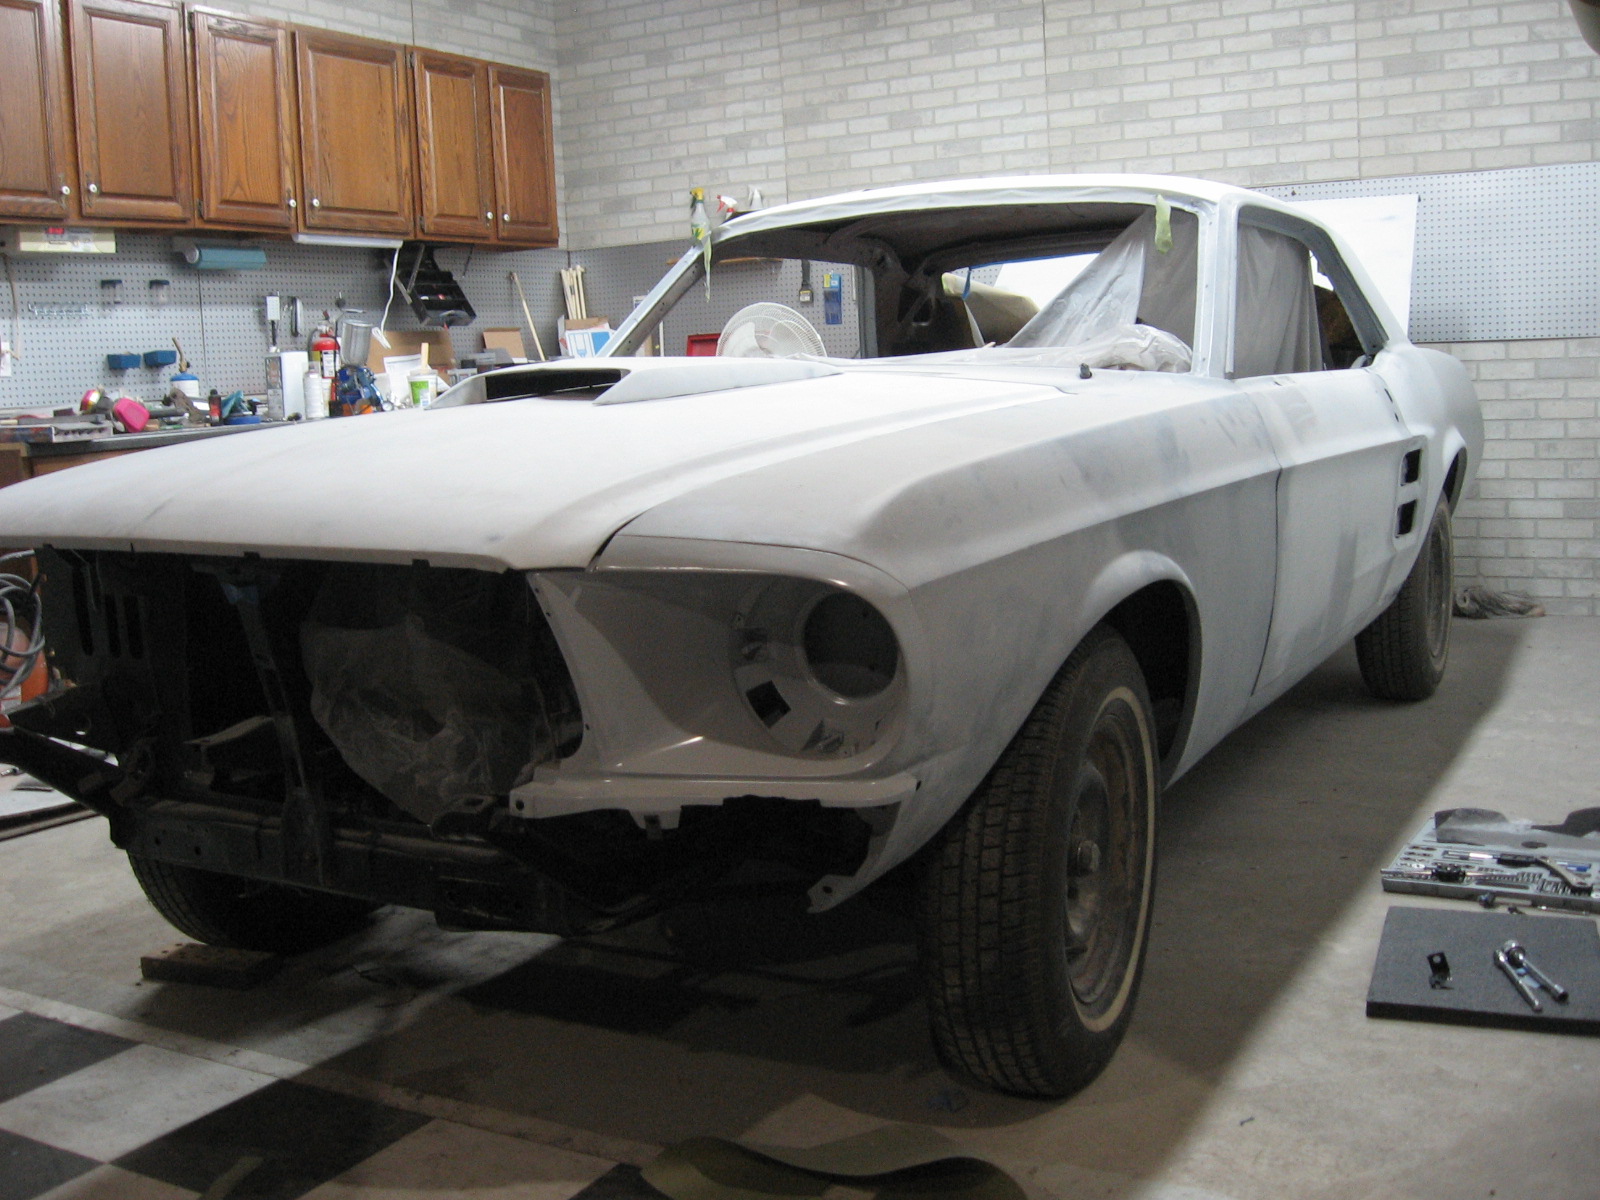 1967 Mustang Restoration: Seam sealer